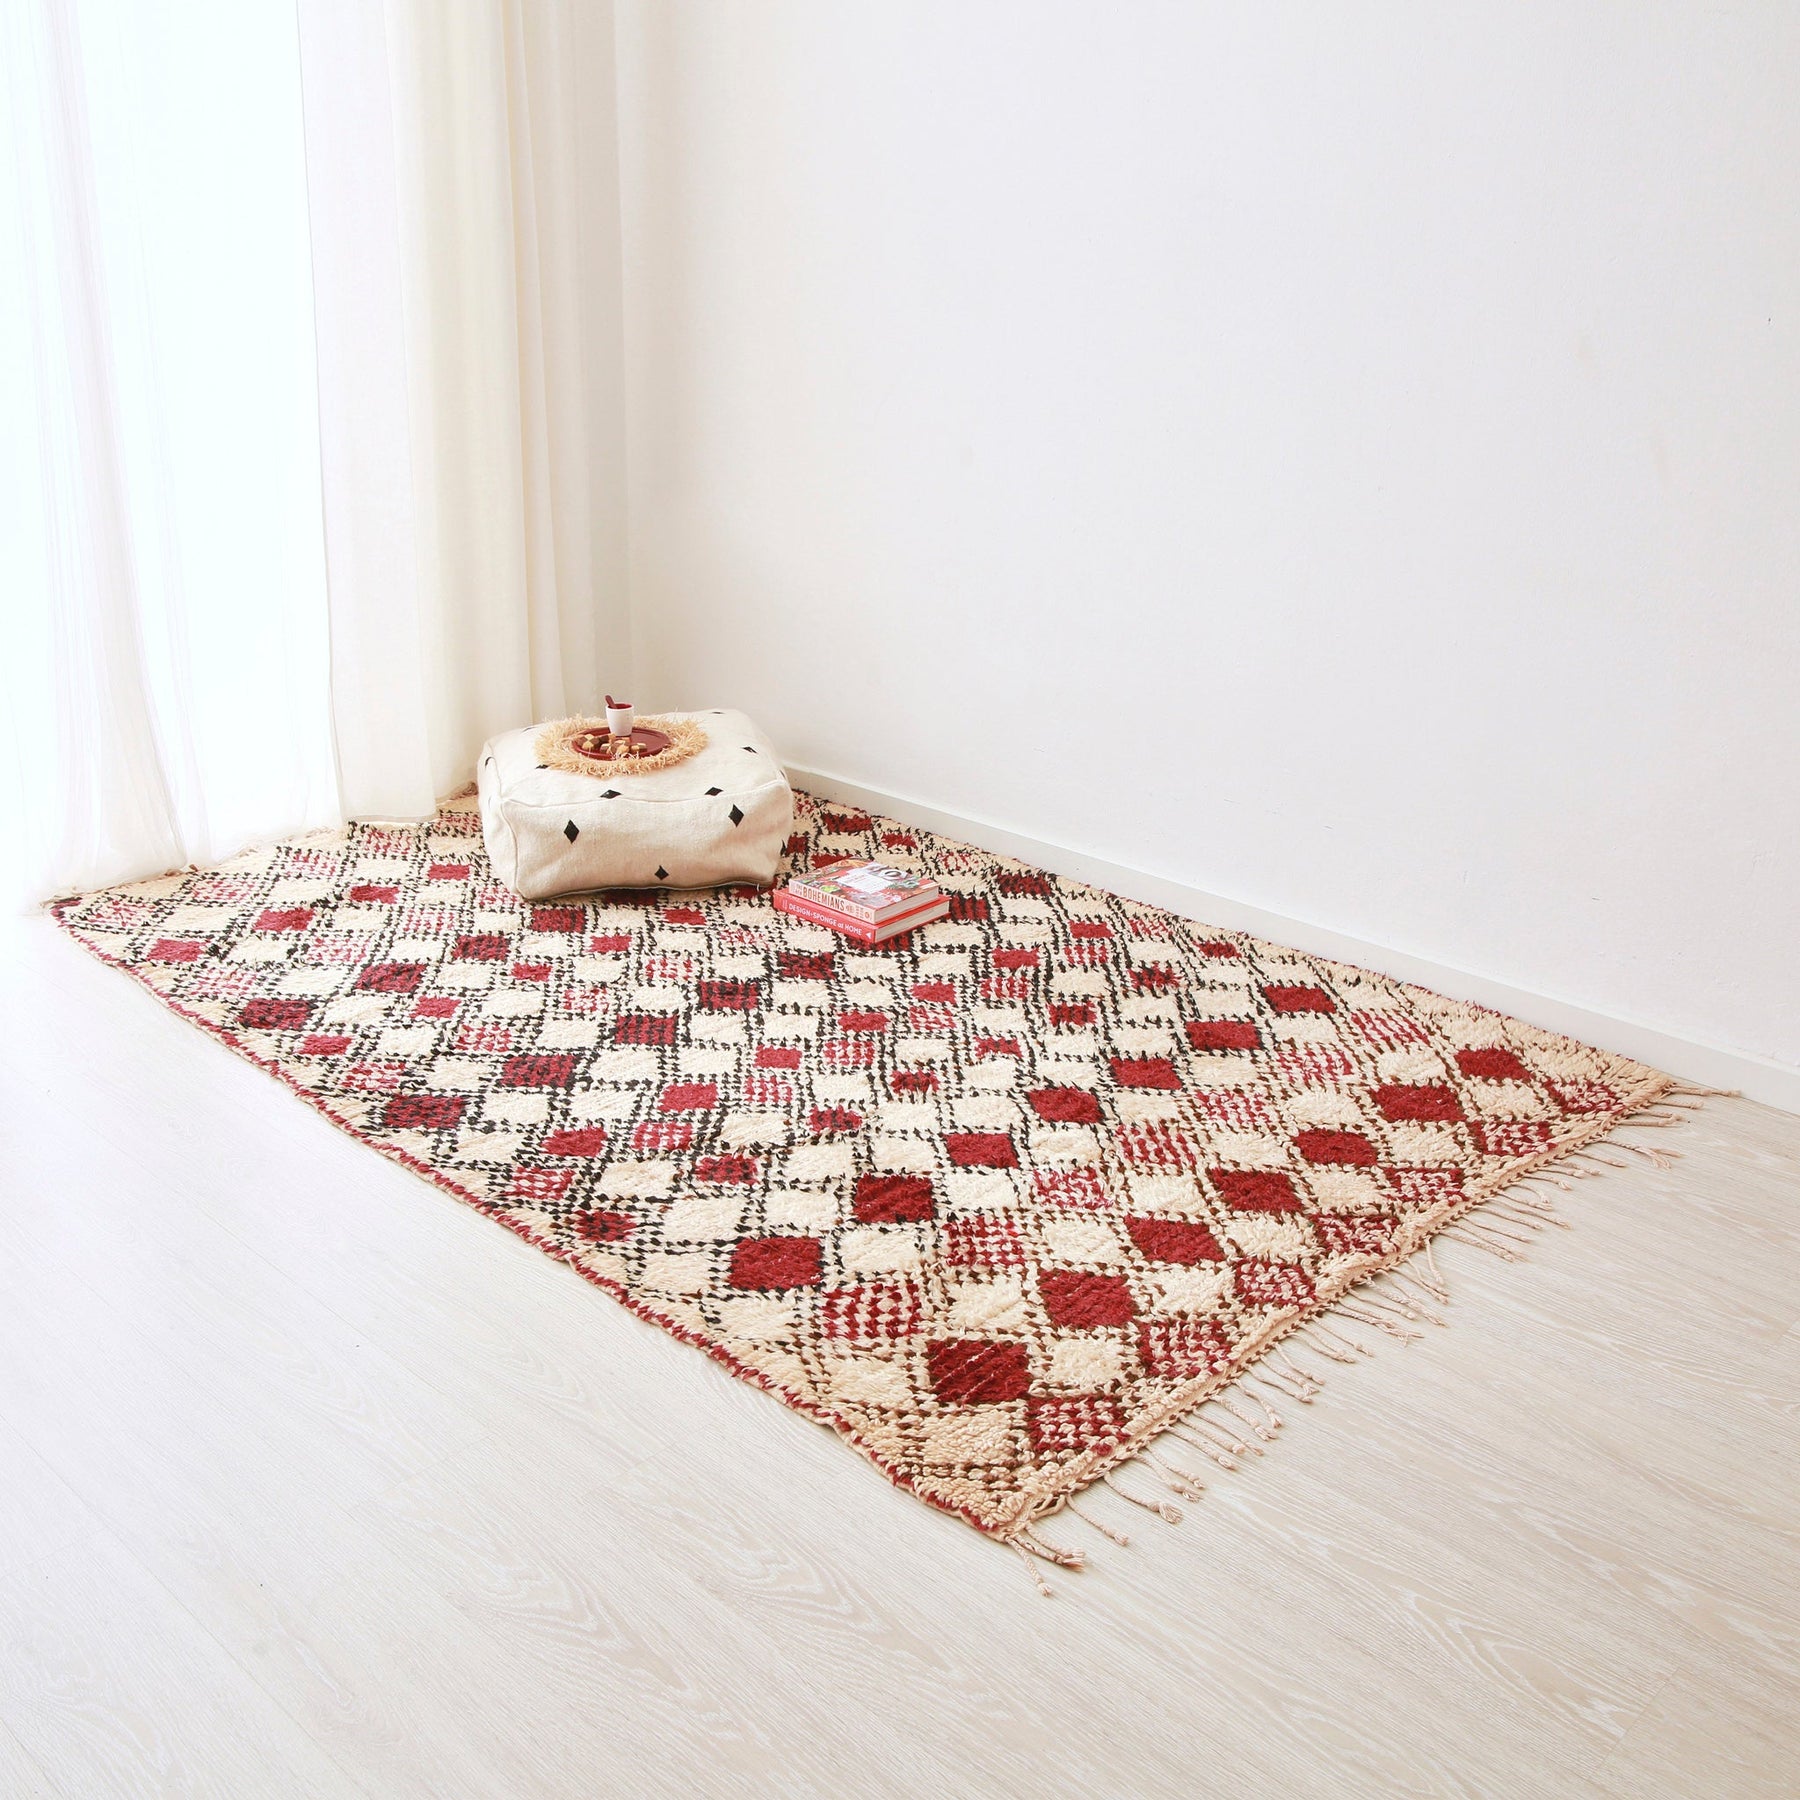 grande tappeto azilal vintage su base bianca con rombi dal bordo nero e interno di varie tonalità di rosso. Sul tappeto c'è una cesta con all'interno due cuscini in sabra rosa e azzurro